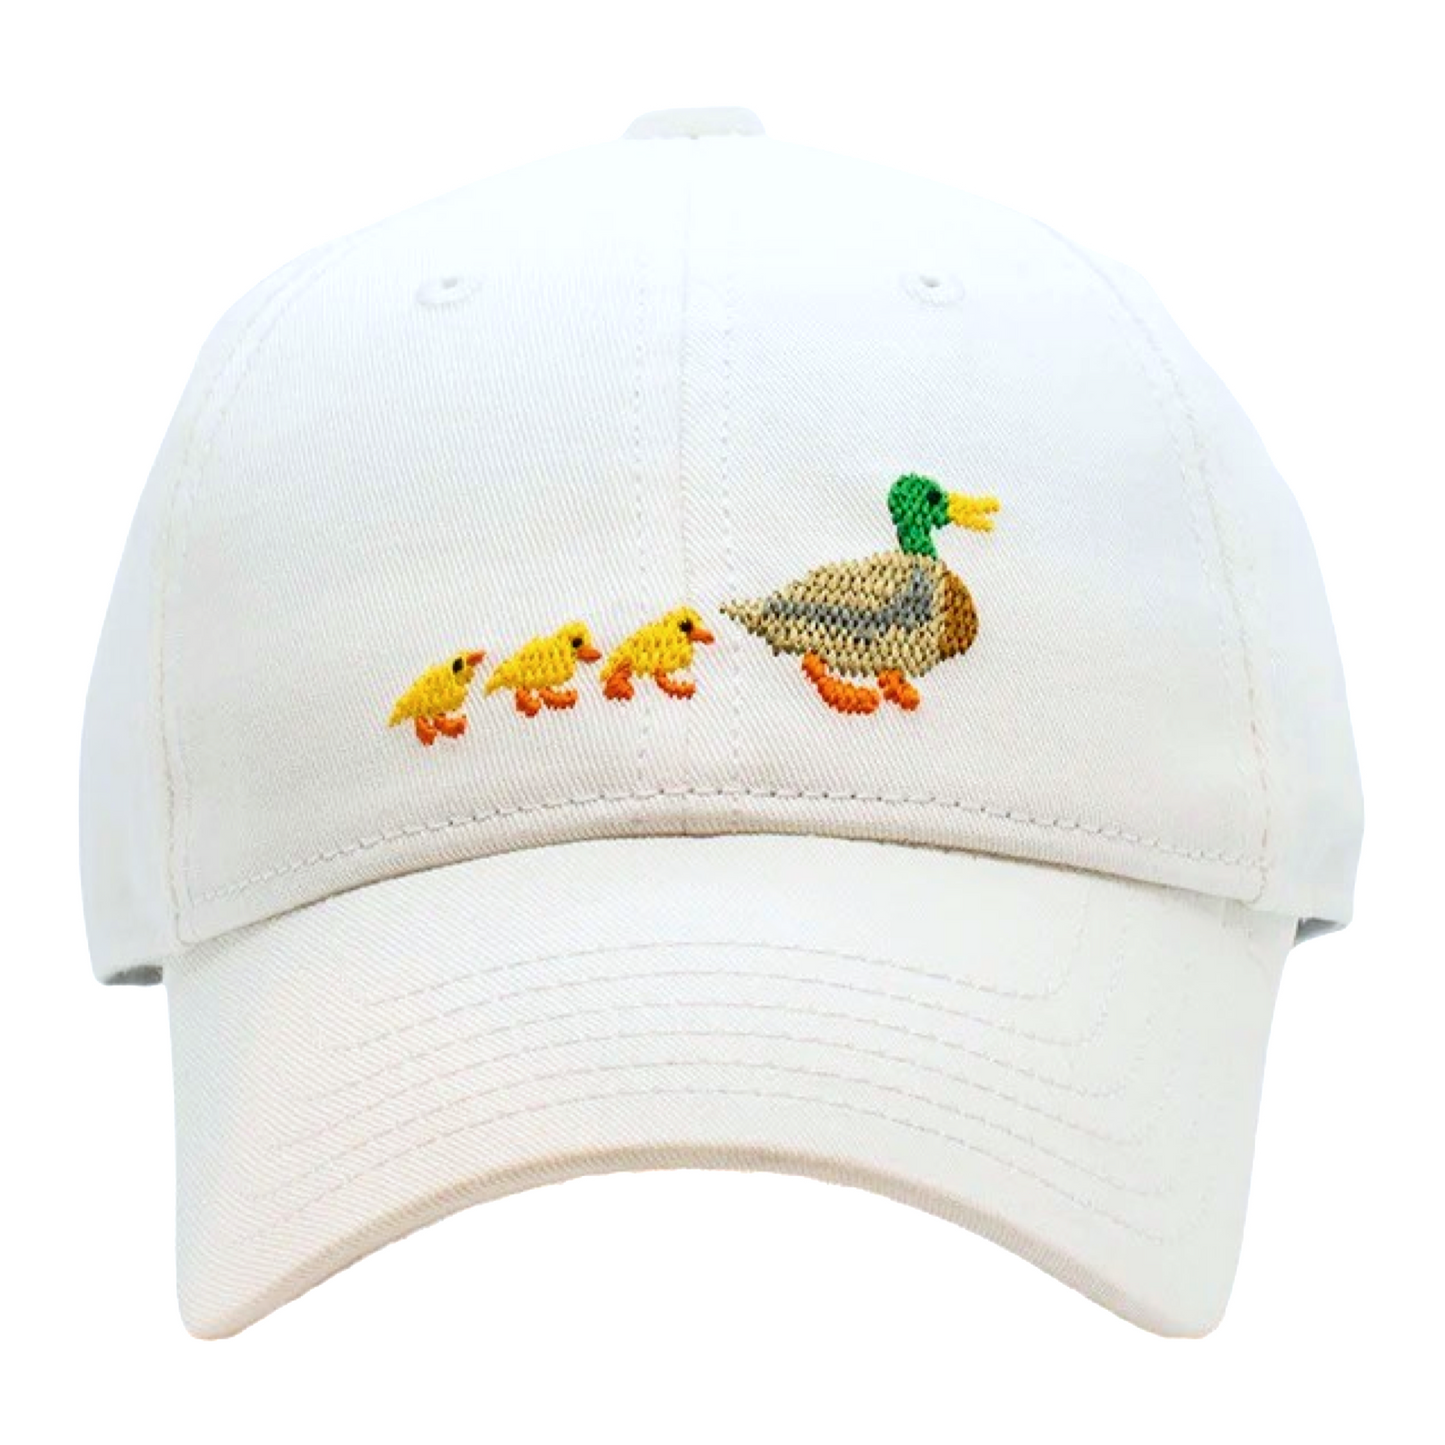 HL Hat - Ducklings